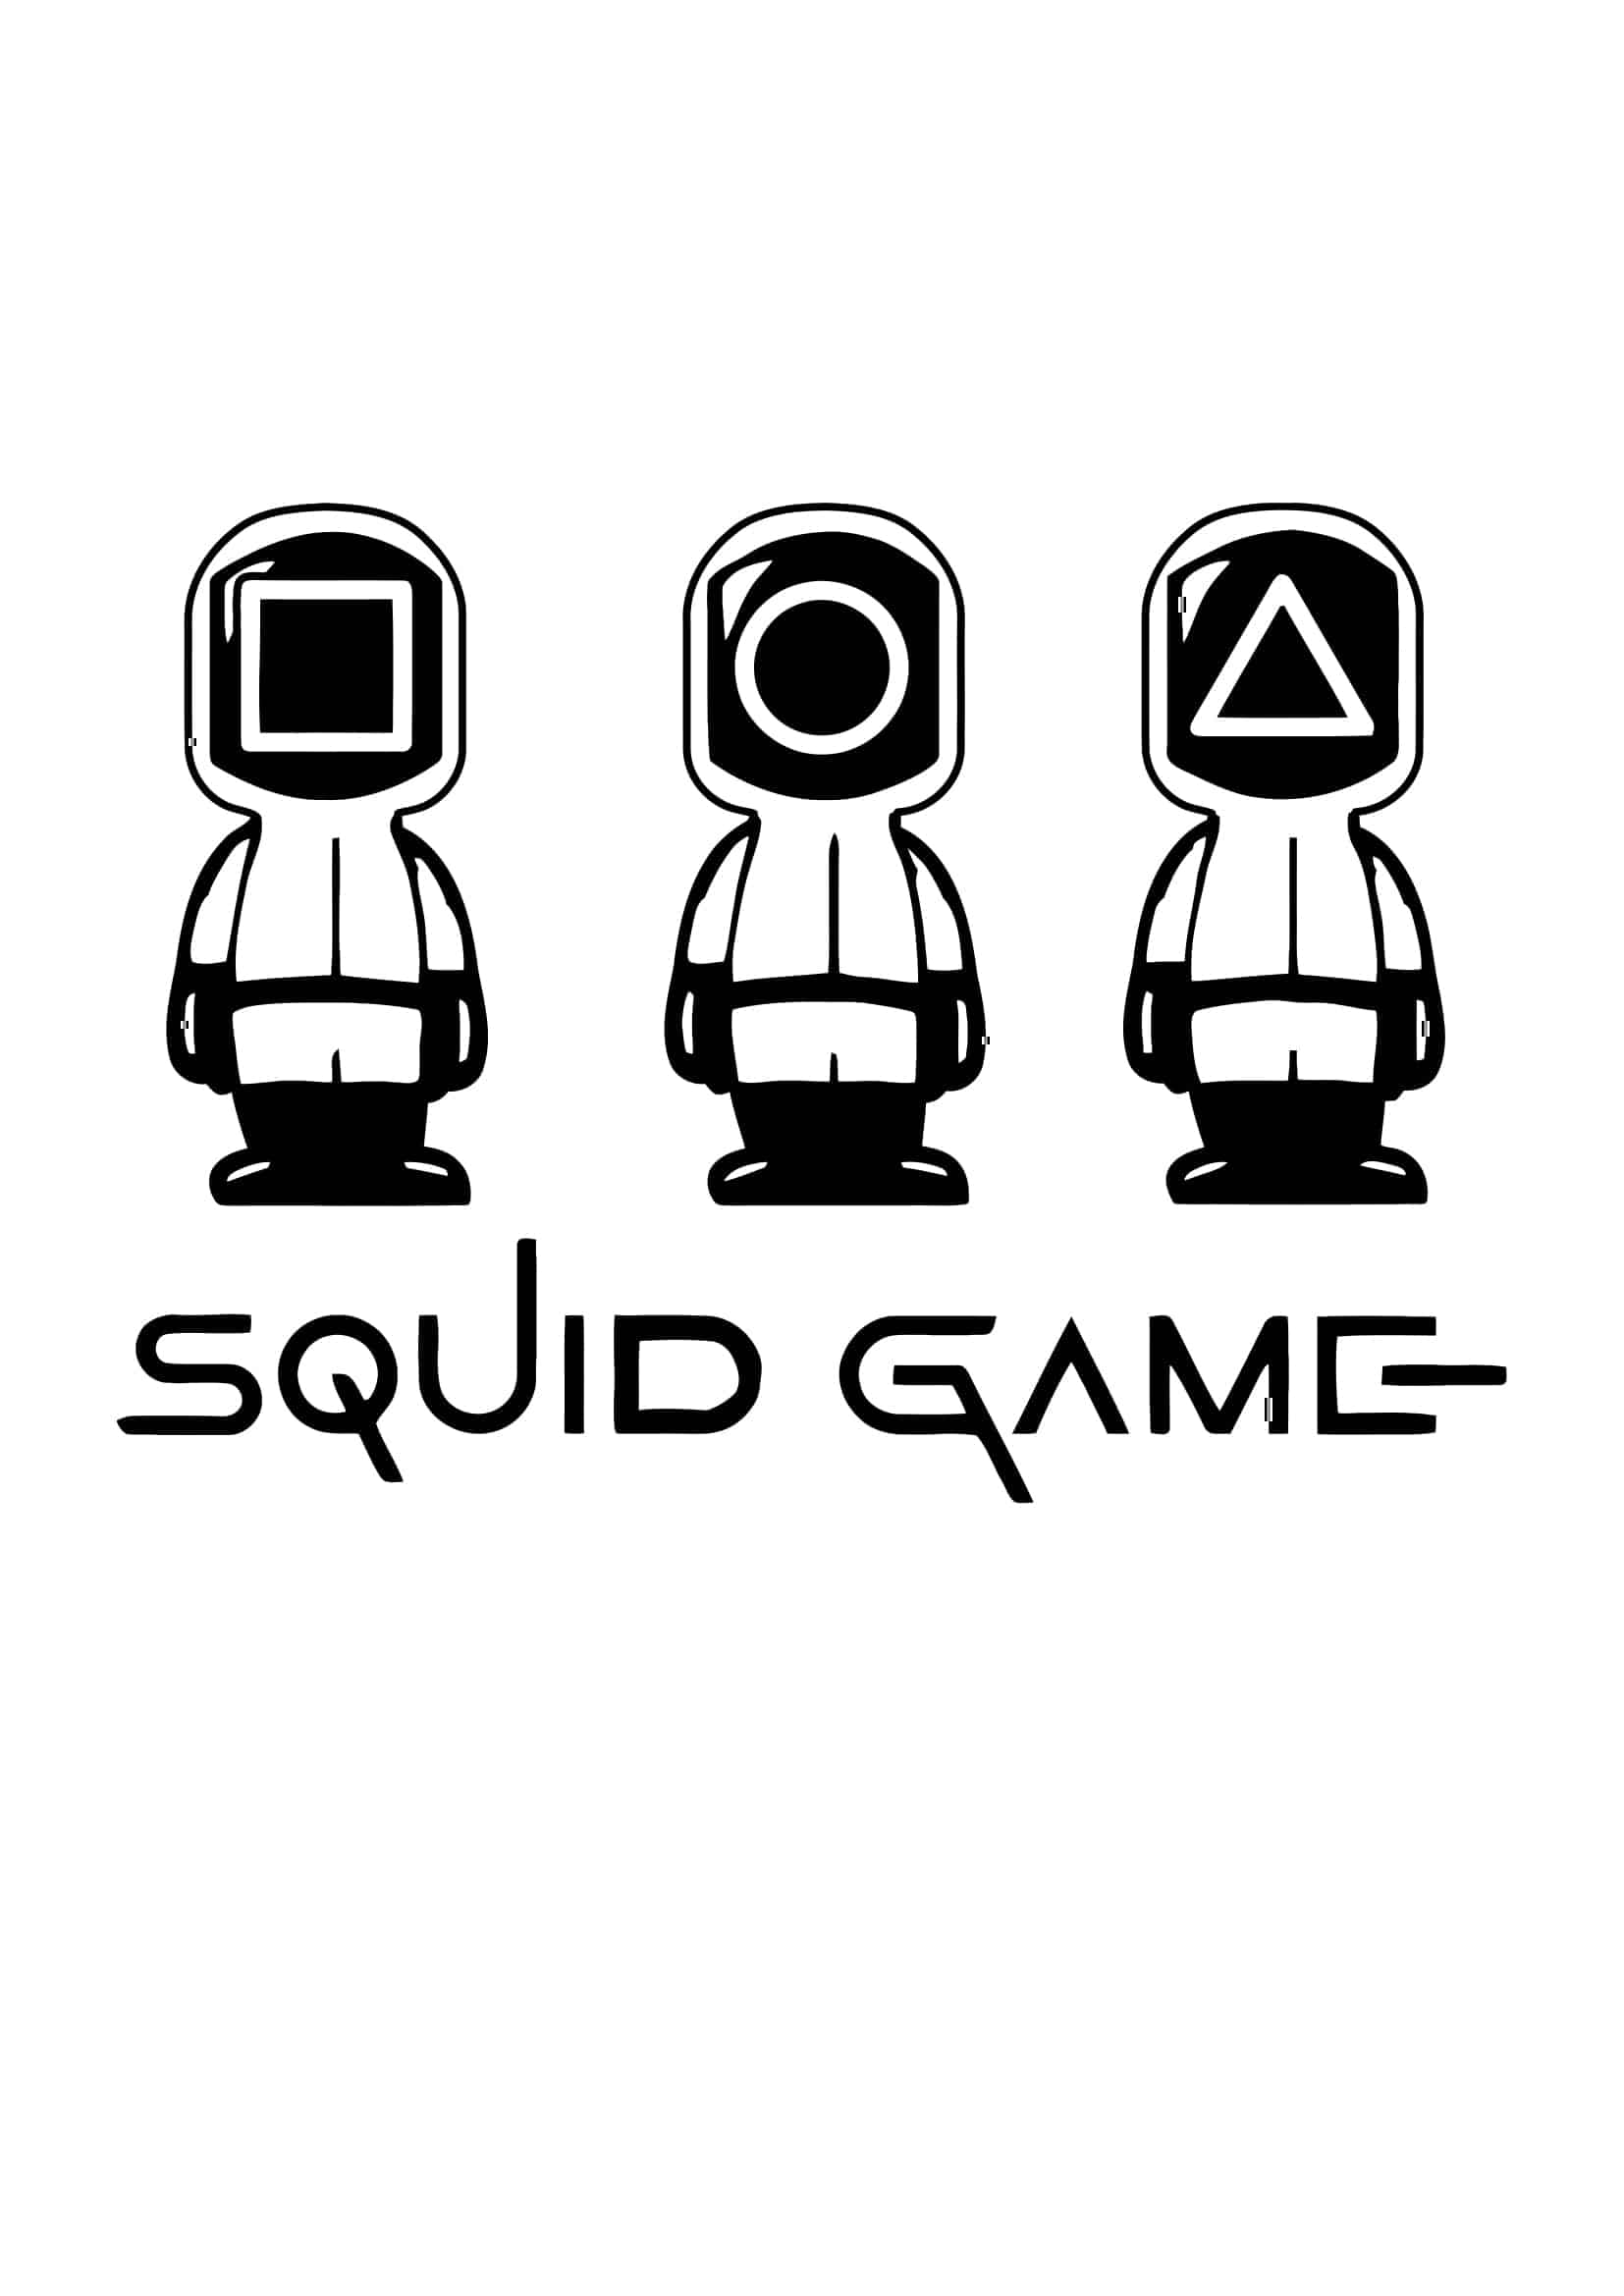 Squid game 06